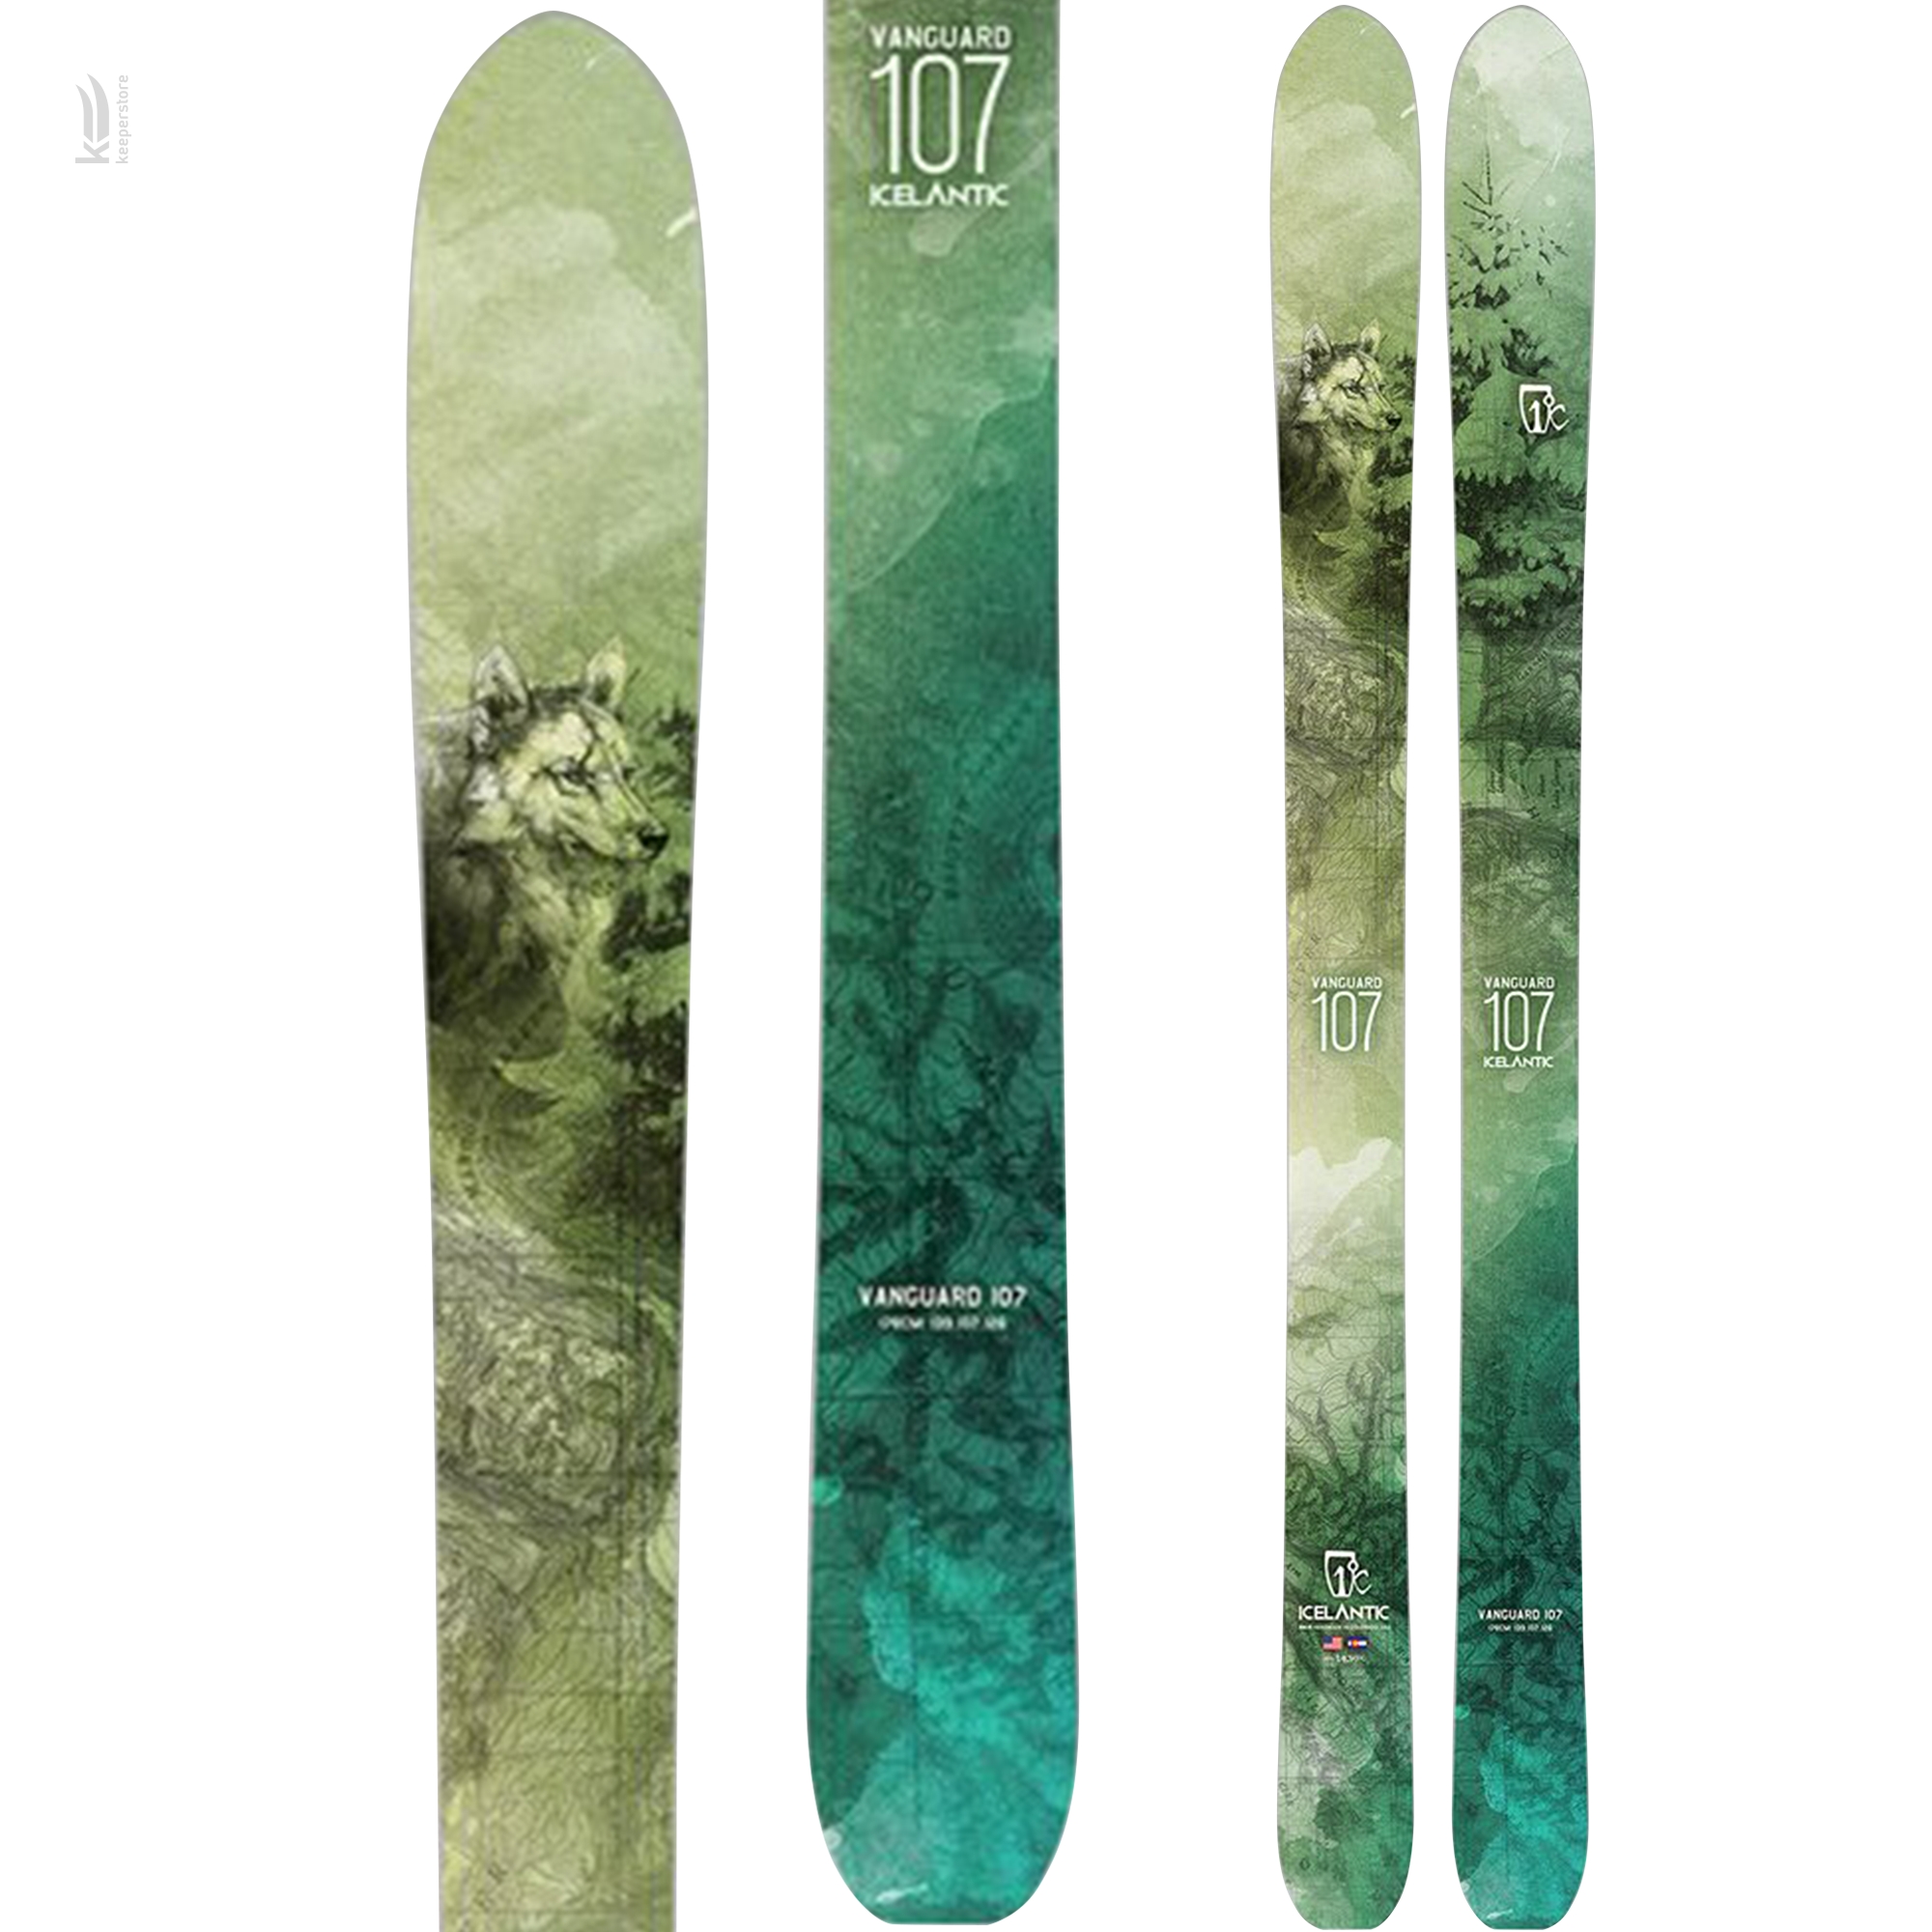 Купить лыжи для скитура Icelantic Vanguard 107 2016/2017 178cm в Киеве